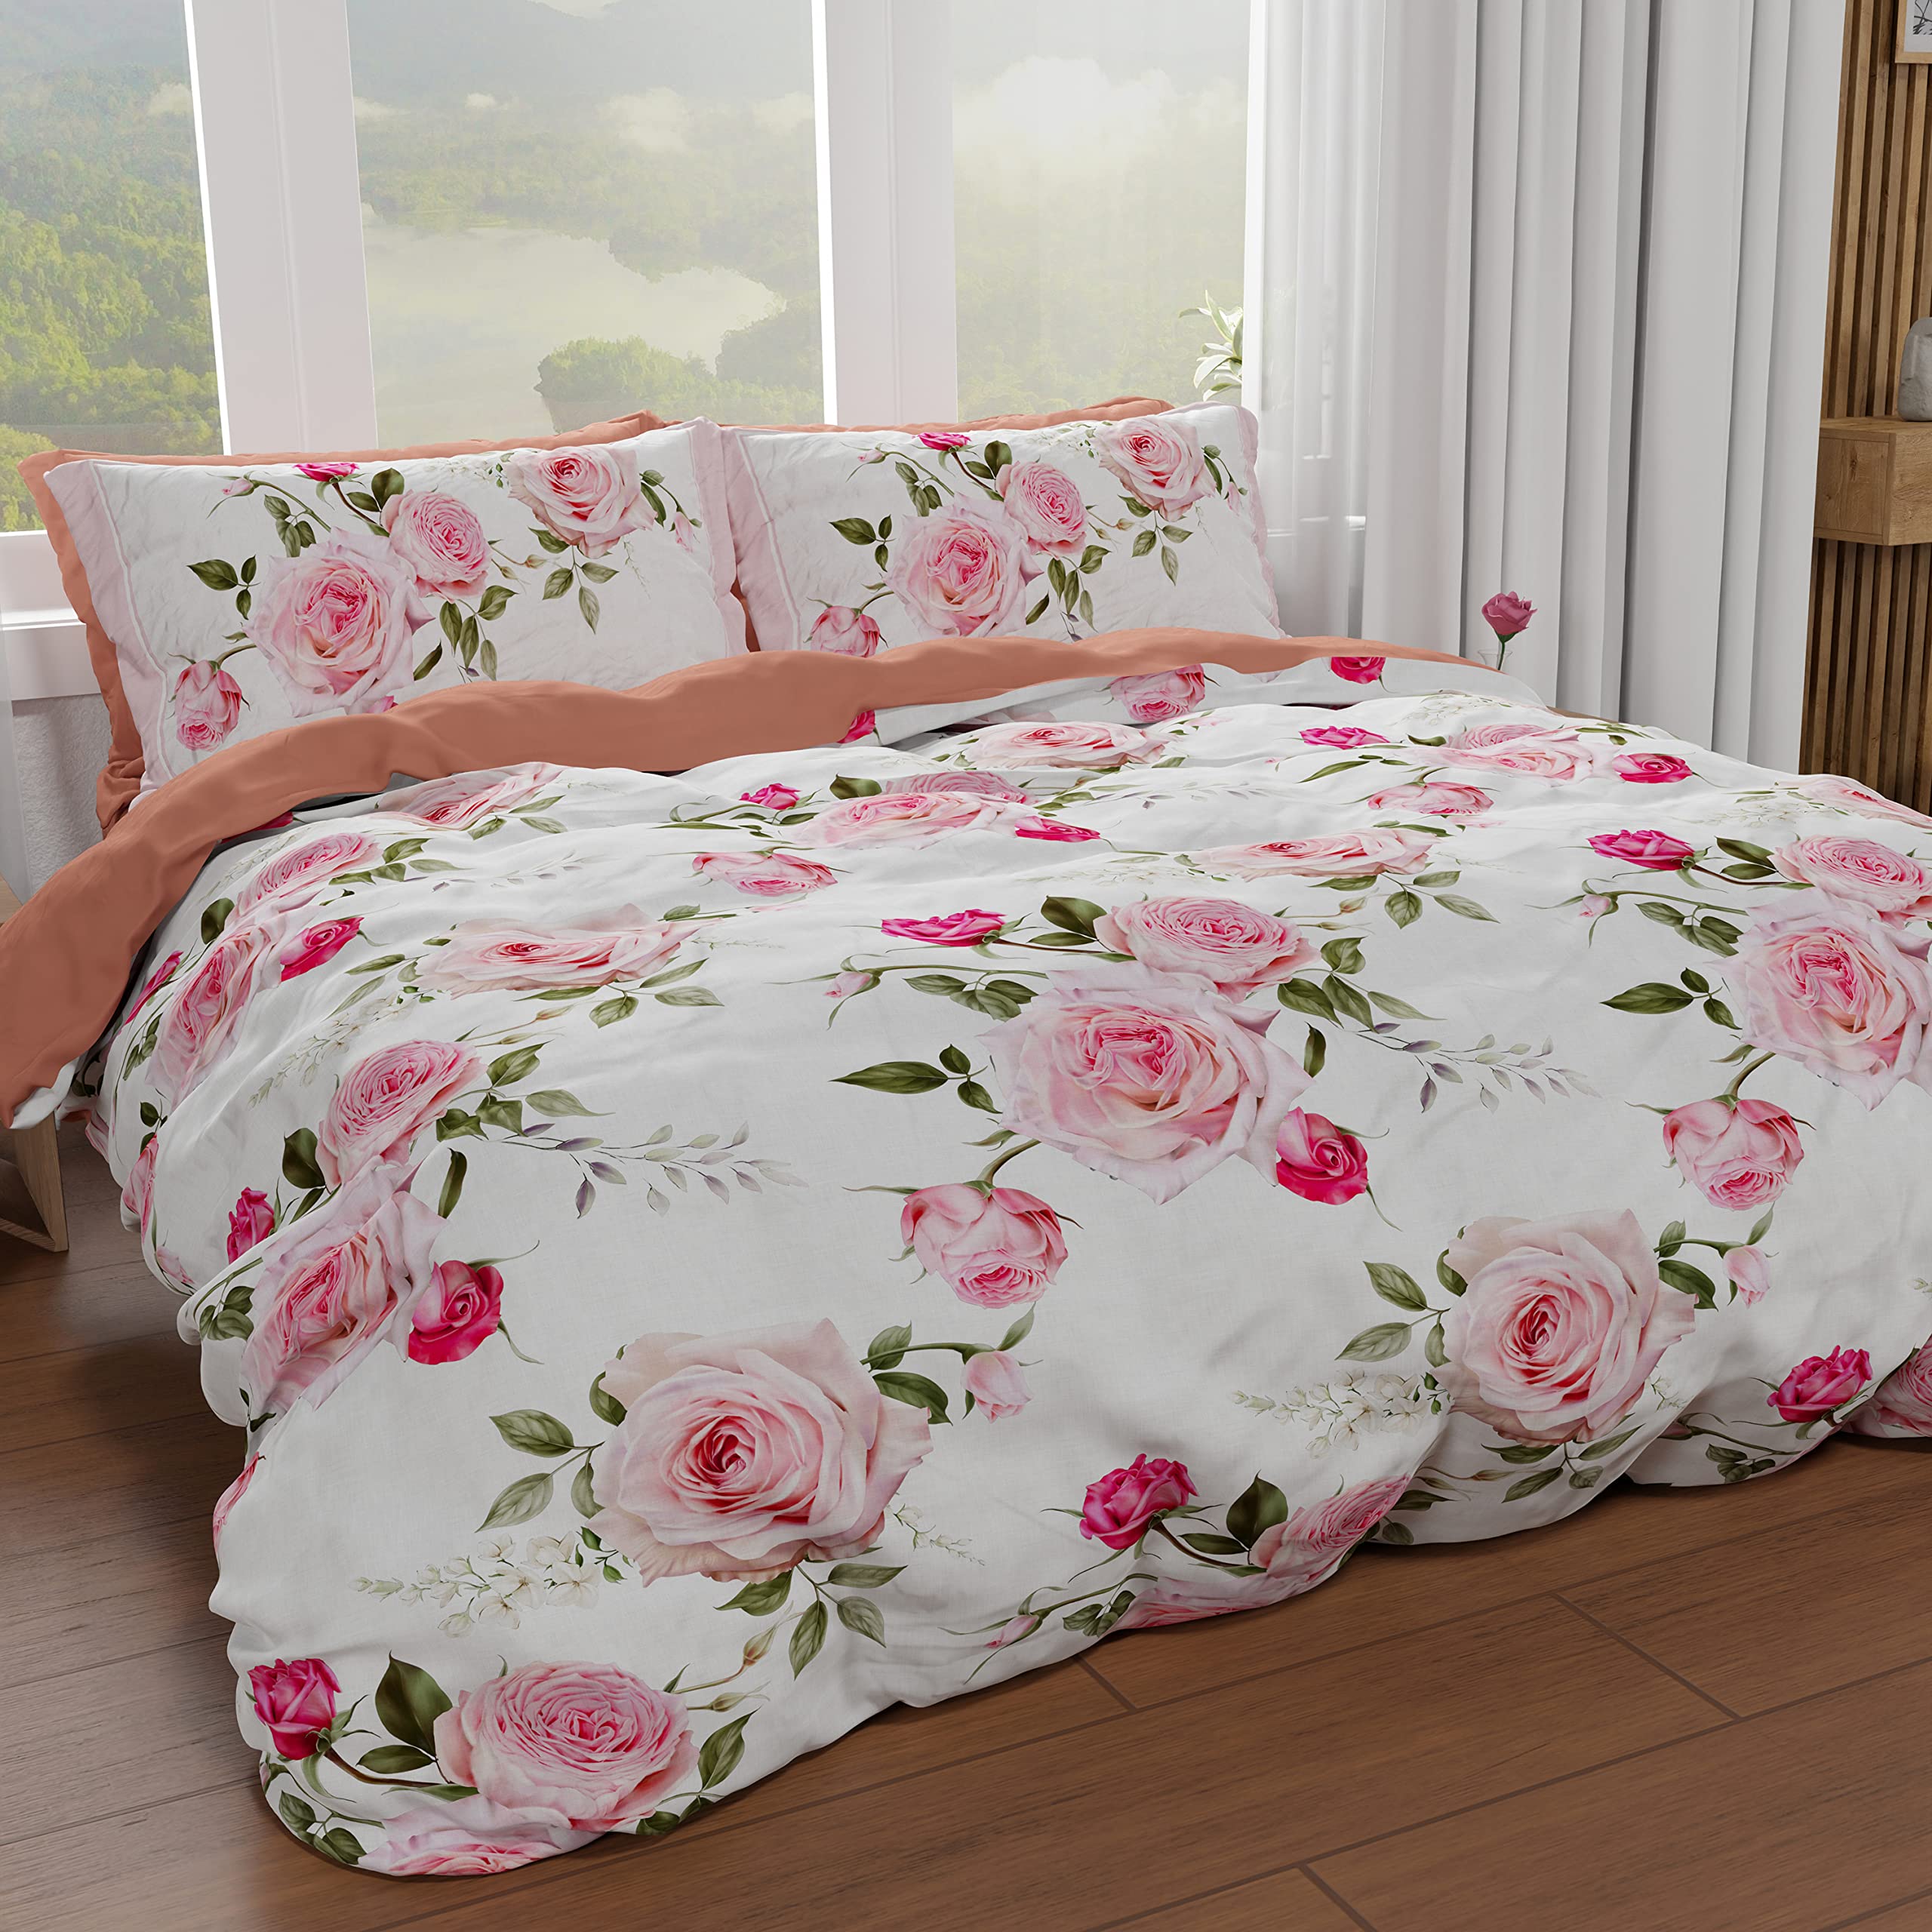 PETTI Artigiani Italiani - Bettbezug für Einzelbett, 160 x 200 cm, Bettbezug aus Mikrofaser mit Digitaldruck + 1 Kissenbezug 50 x 80 cm - Made in Italy - Blumen 20 Weiß